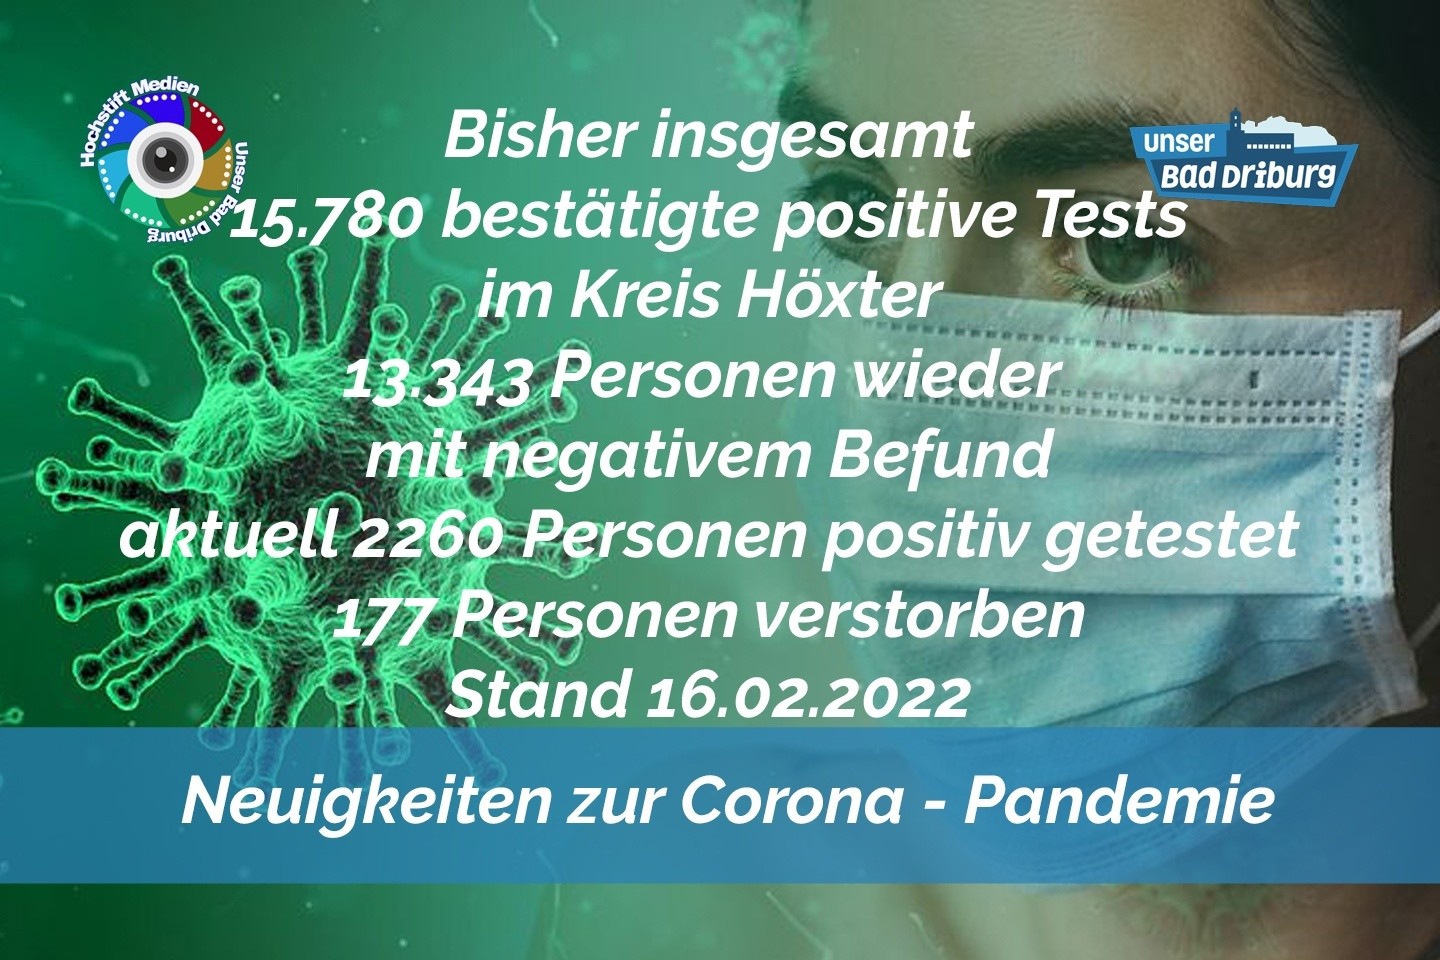 Update 16. Februar 2022: 256 weitere amtlich positive Tests im Kreis Höxter